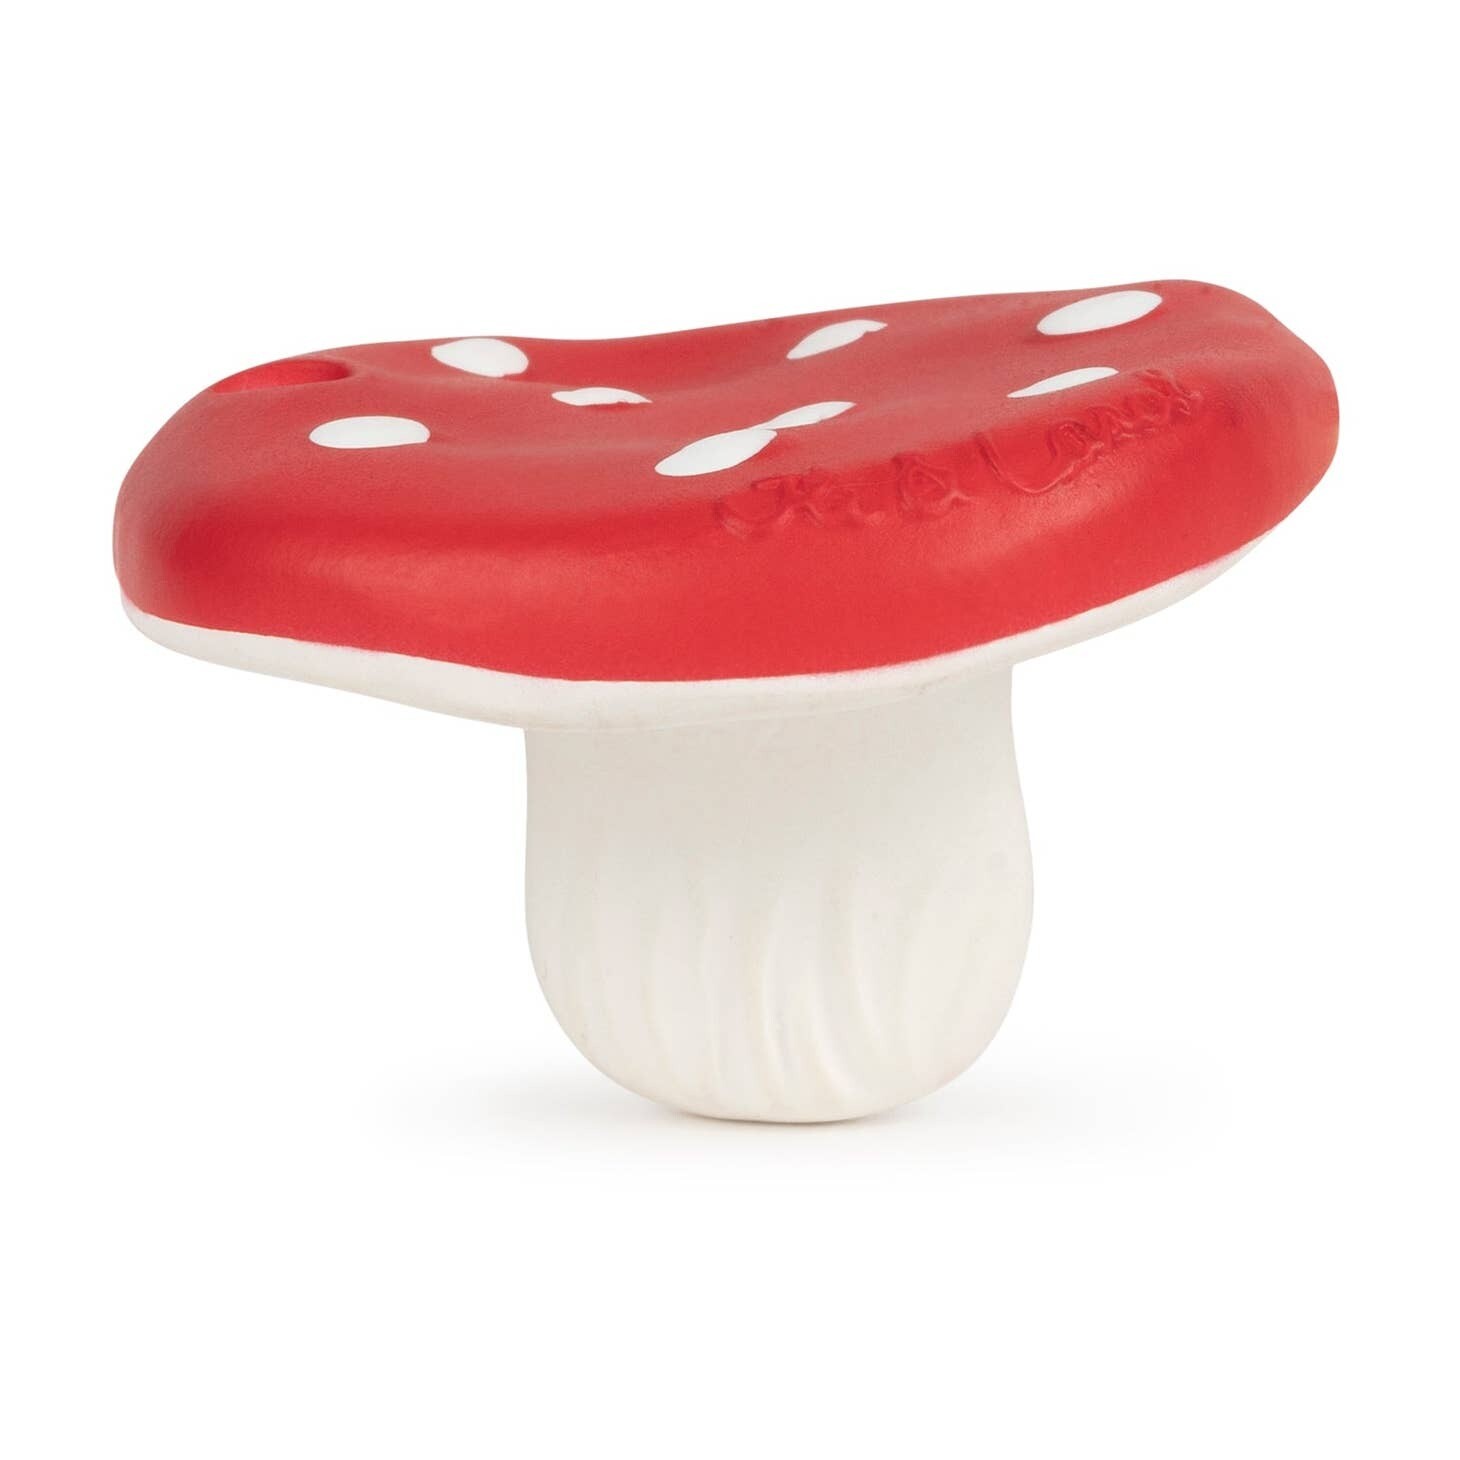 Chewy Mushroom